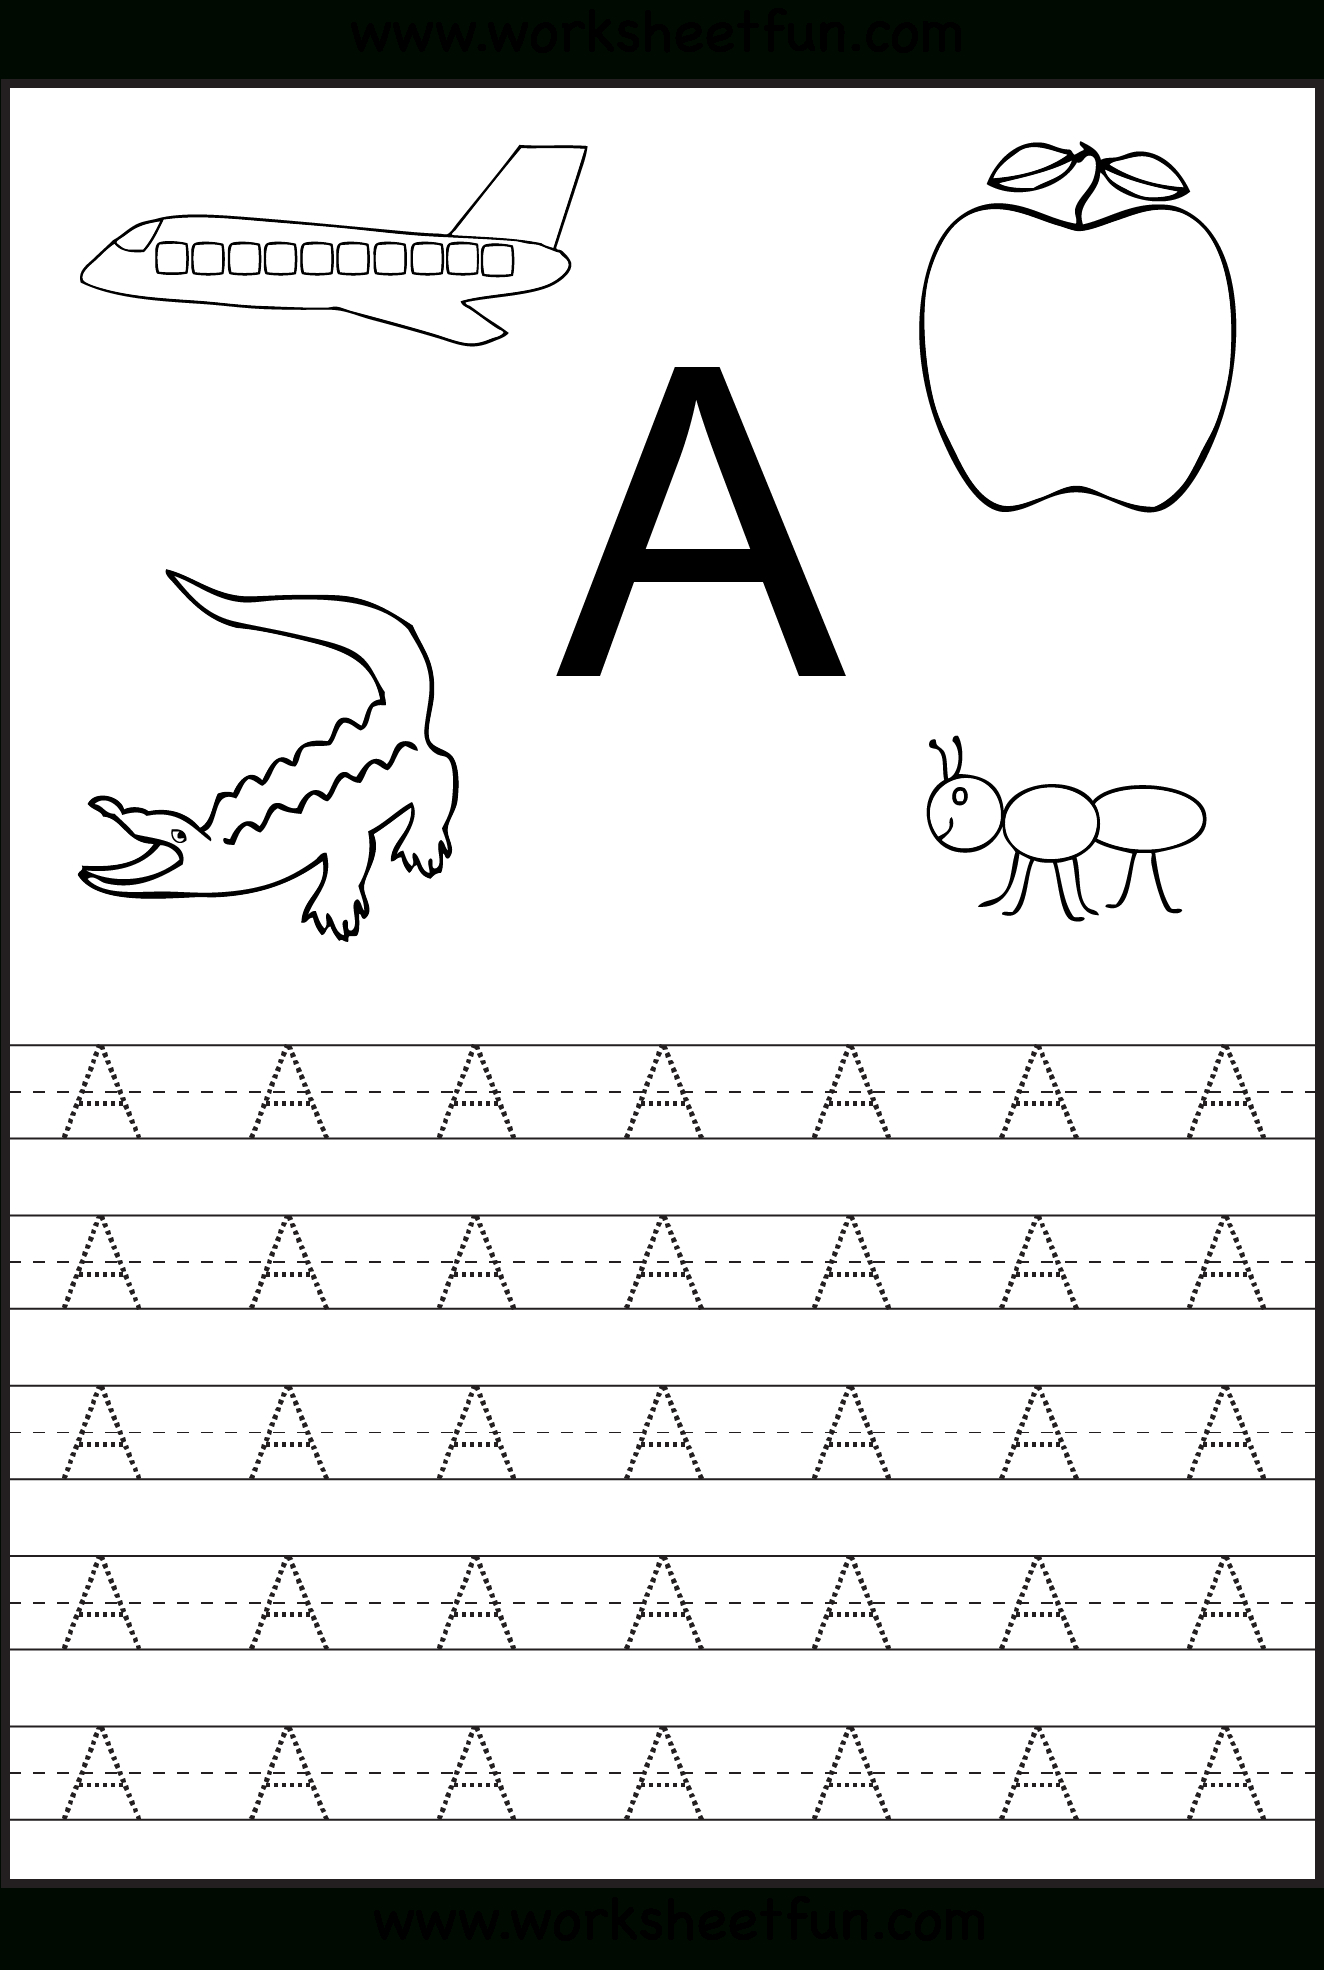 Printable Tracing Worksheets For Kindergarten - 16.11.ybonlineacess.de • - Free Printable Name Tracing Worksheets